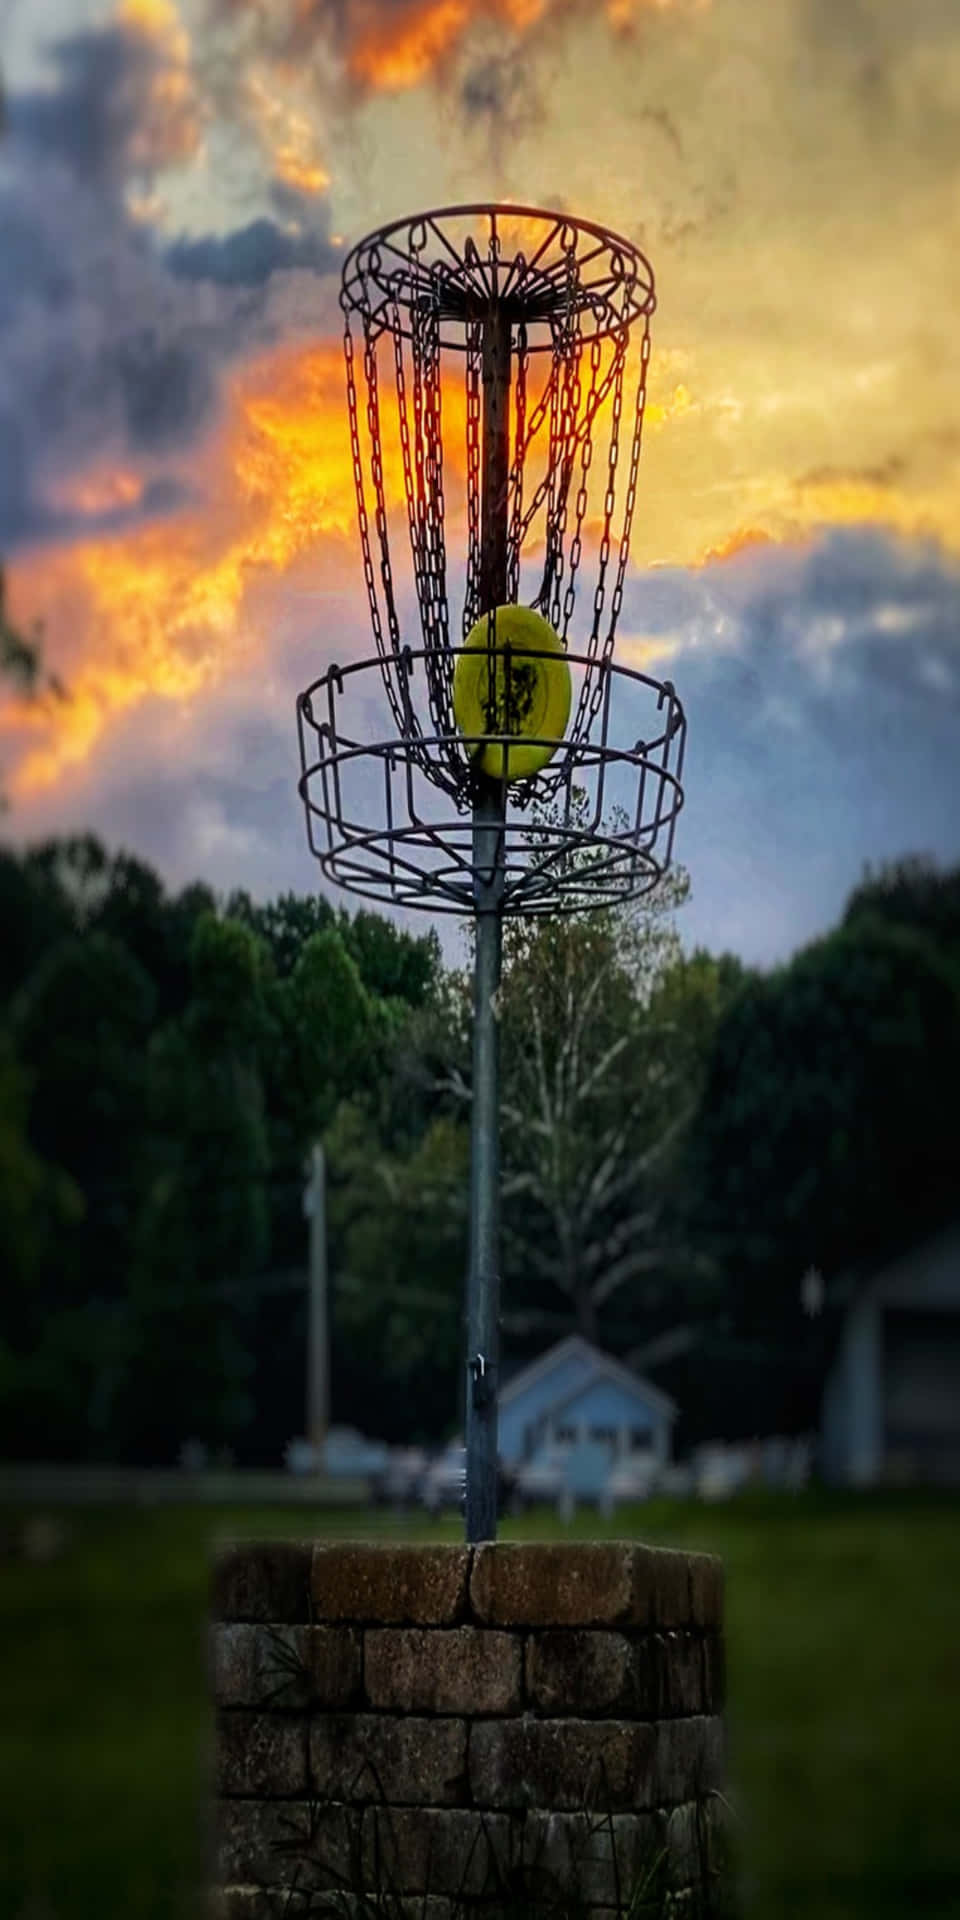 Enfärgglad Frisbee Som Flyger Genom Luften Upplyst Av En Solnedgång.